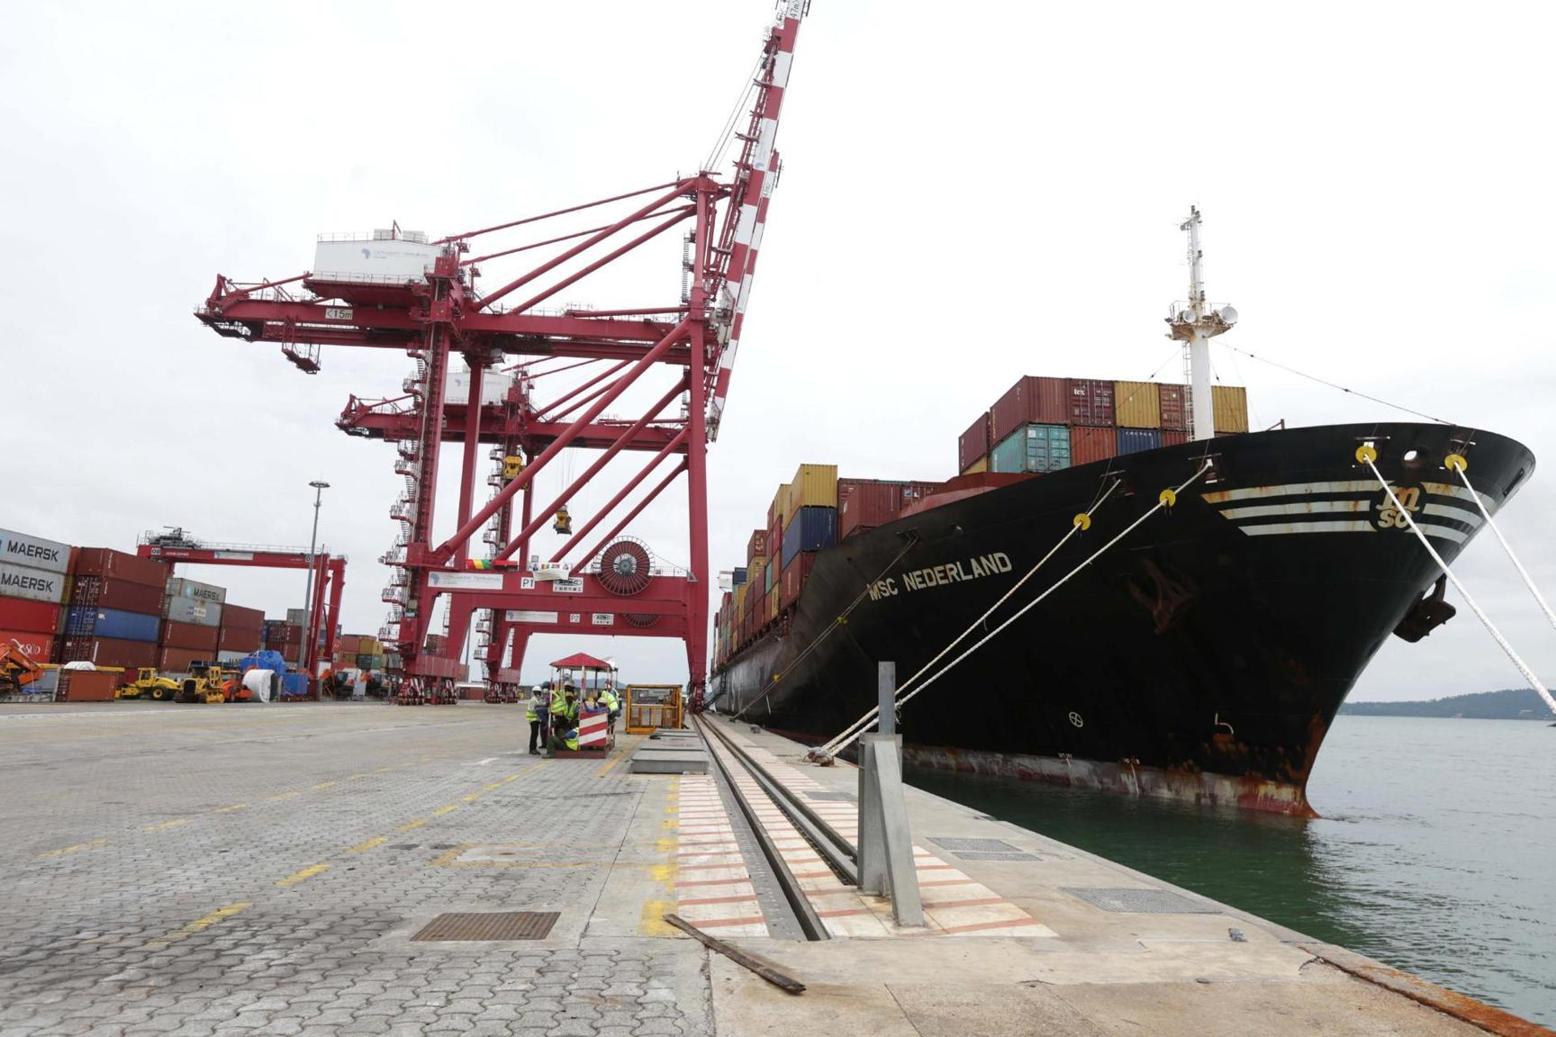 ميناء لوبيتو الأطلسي شريان نقل رئيس في عمق القارة الافريقية